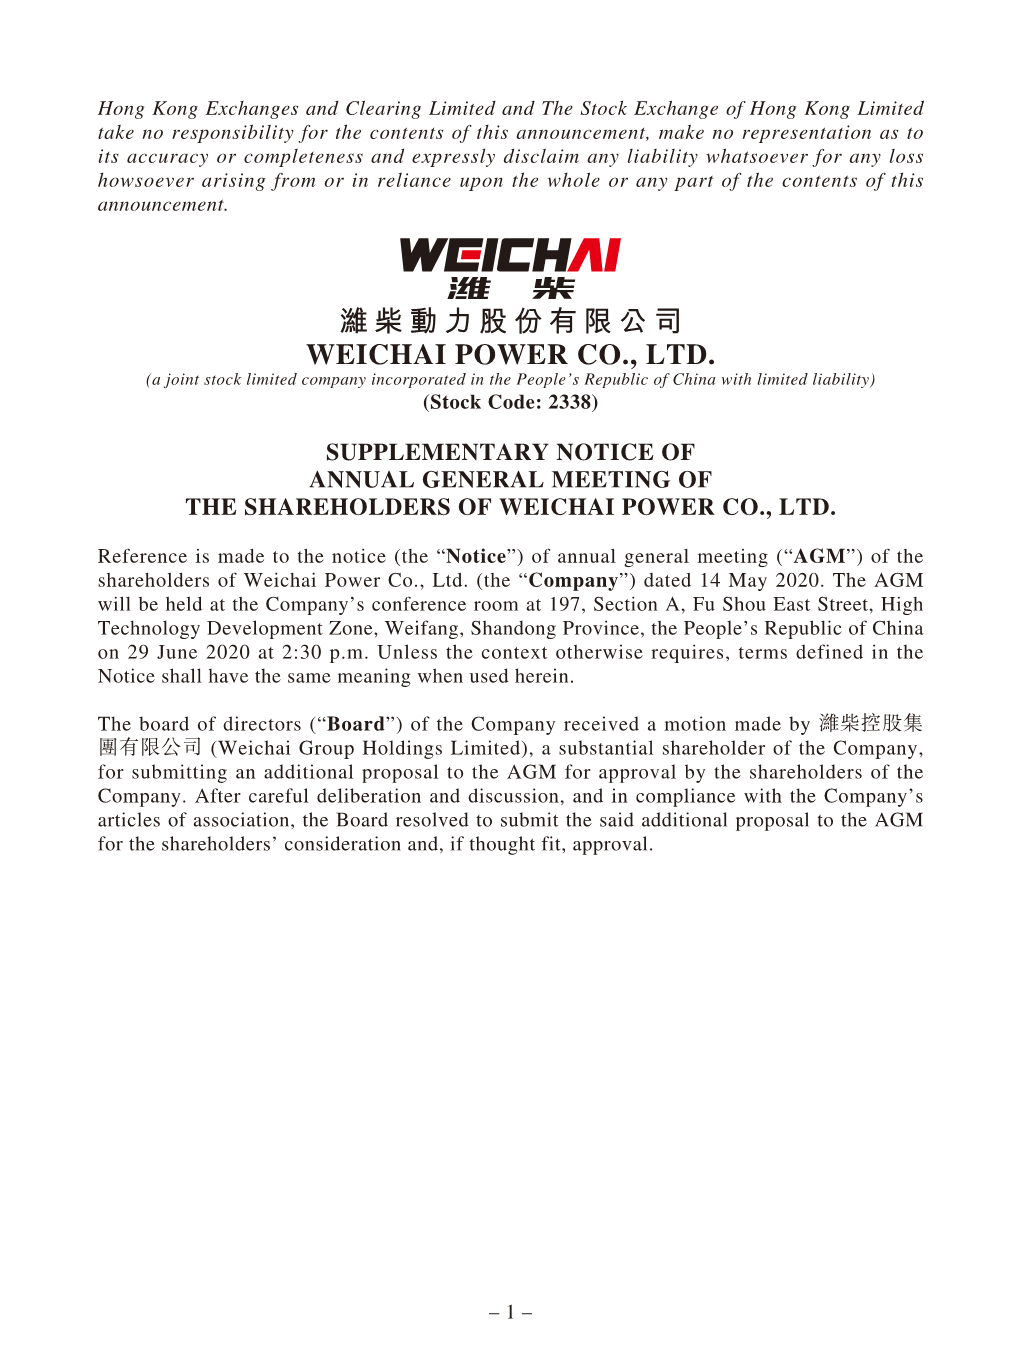 濰柴動力股份有限公司 WEICHAI POWER CO., LTD. (A Joint Stock Limited Company Incorporated in the People’S Republic of China with Limited Liability) (Stock Code: 2338)